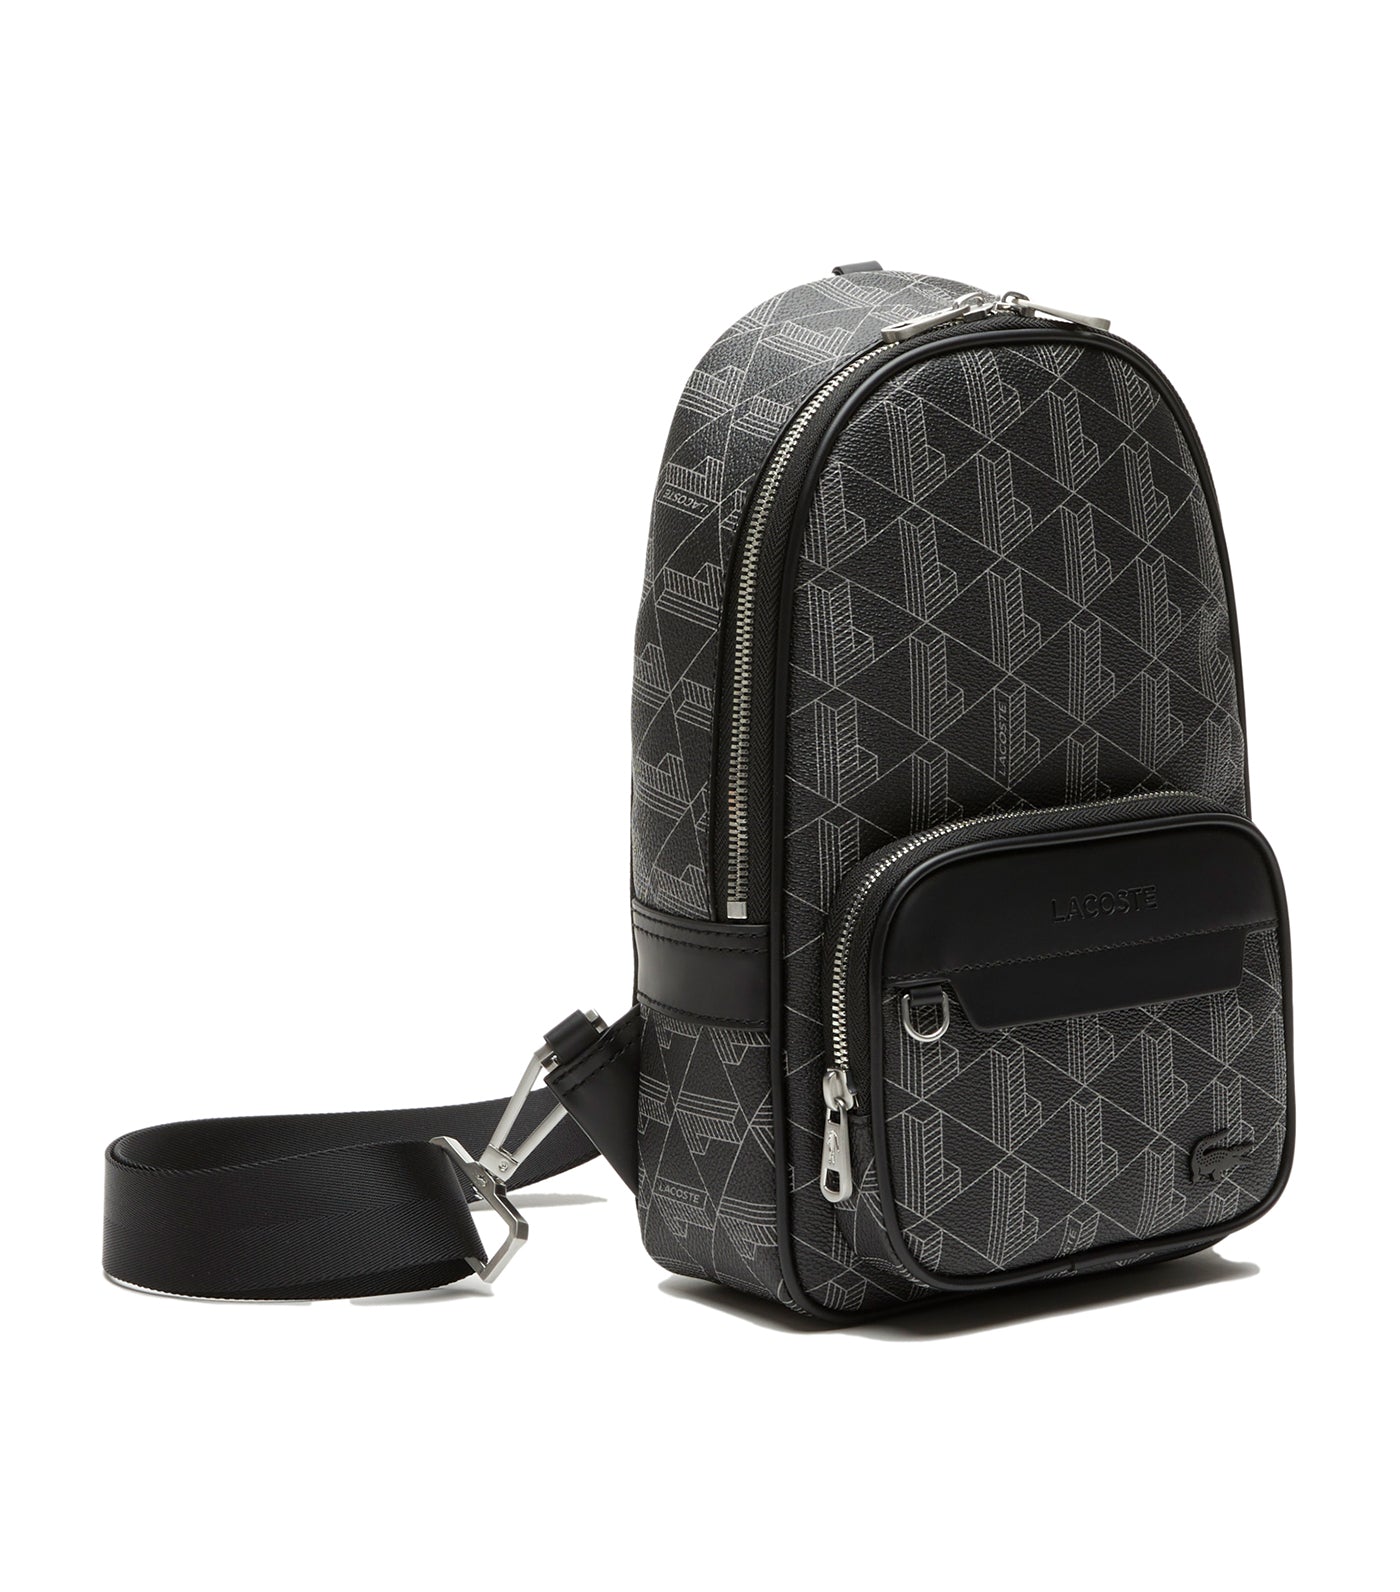 LACOSTE cross body bag Messenger Bag L Monogram Noir Gris, Buy bags,  purses & accessories online